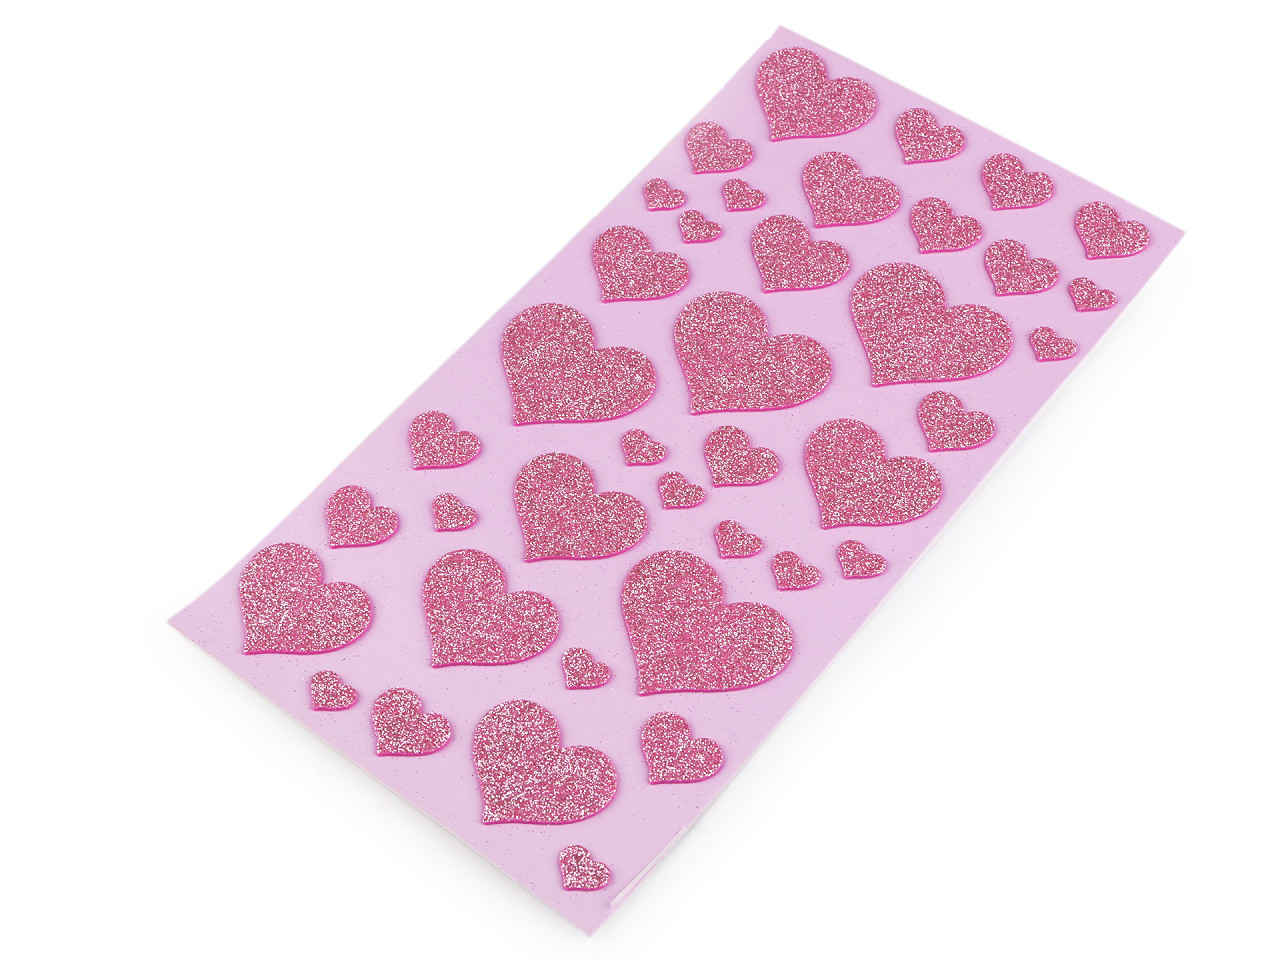 Samolepicí pěnová guma Moosgummi srdce s glitry - mix velikostí, barva 2 růžová sv.